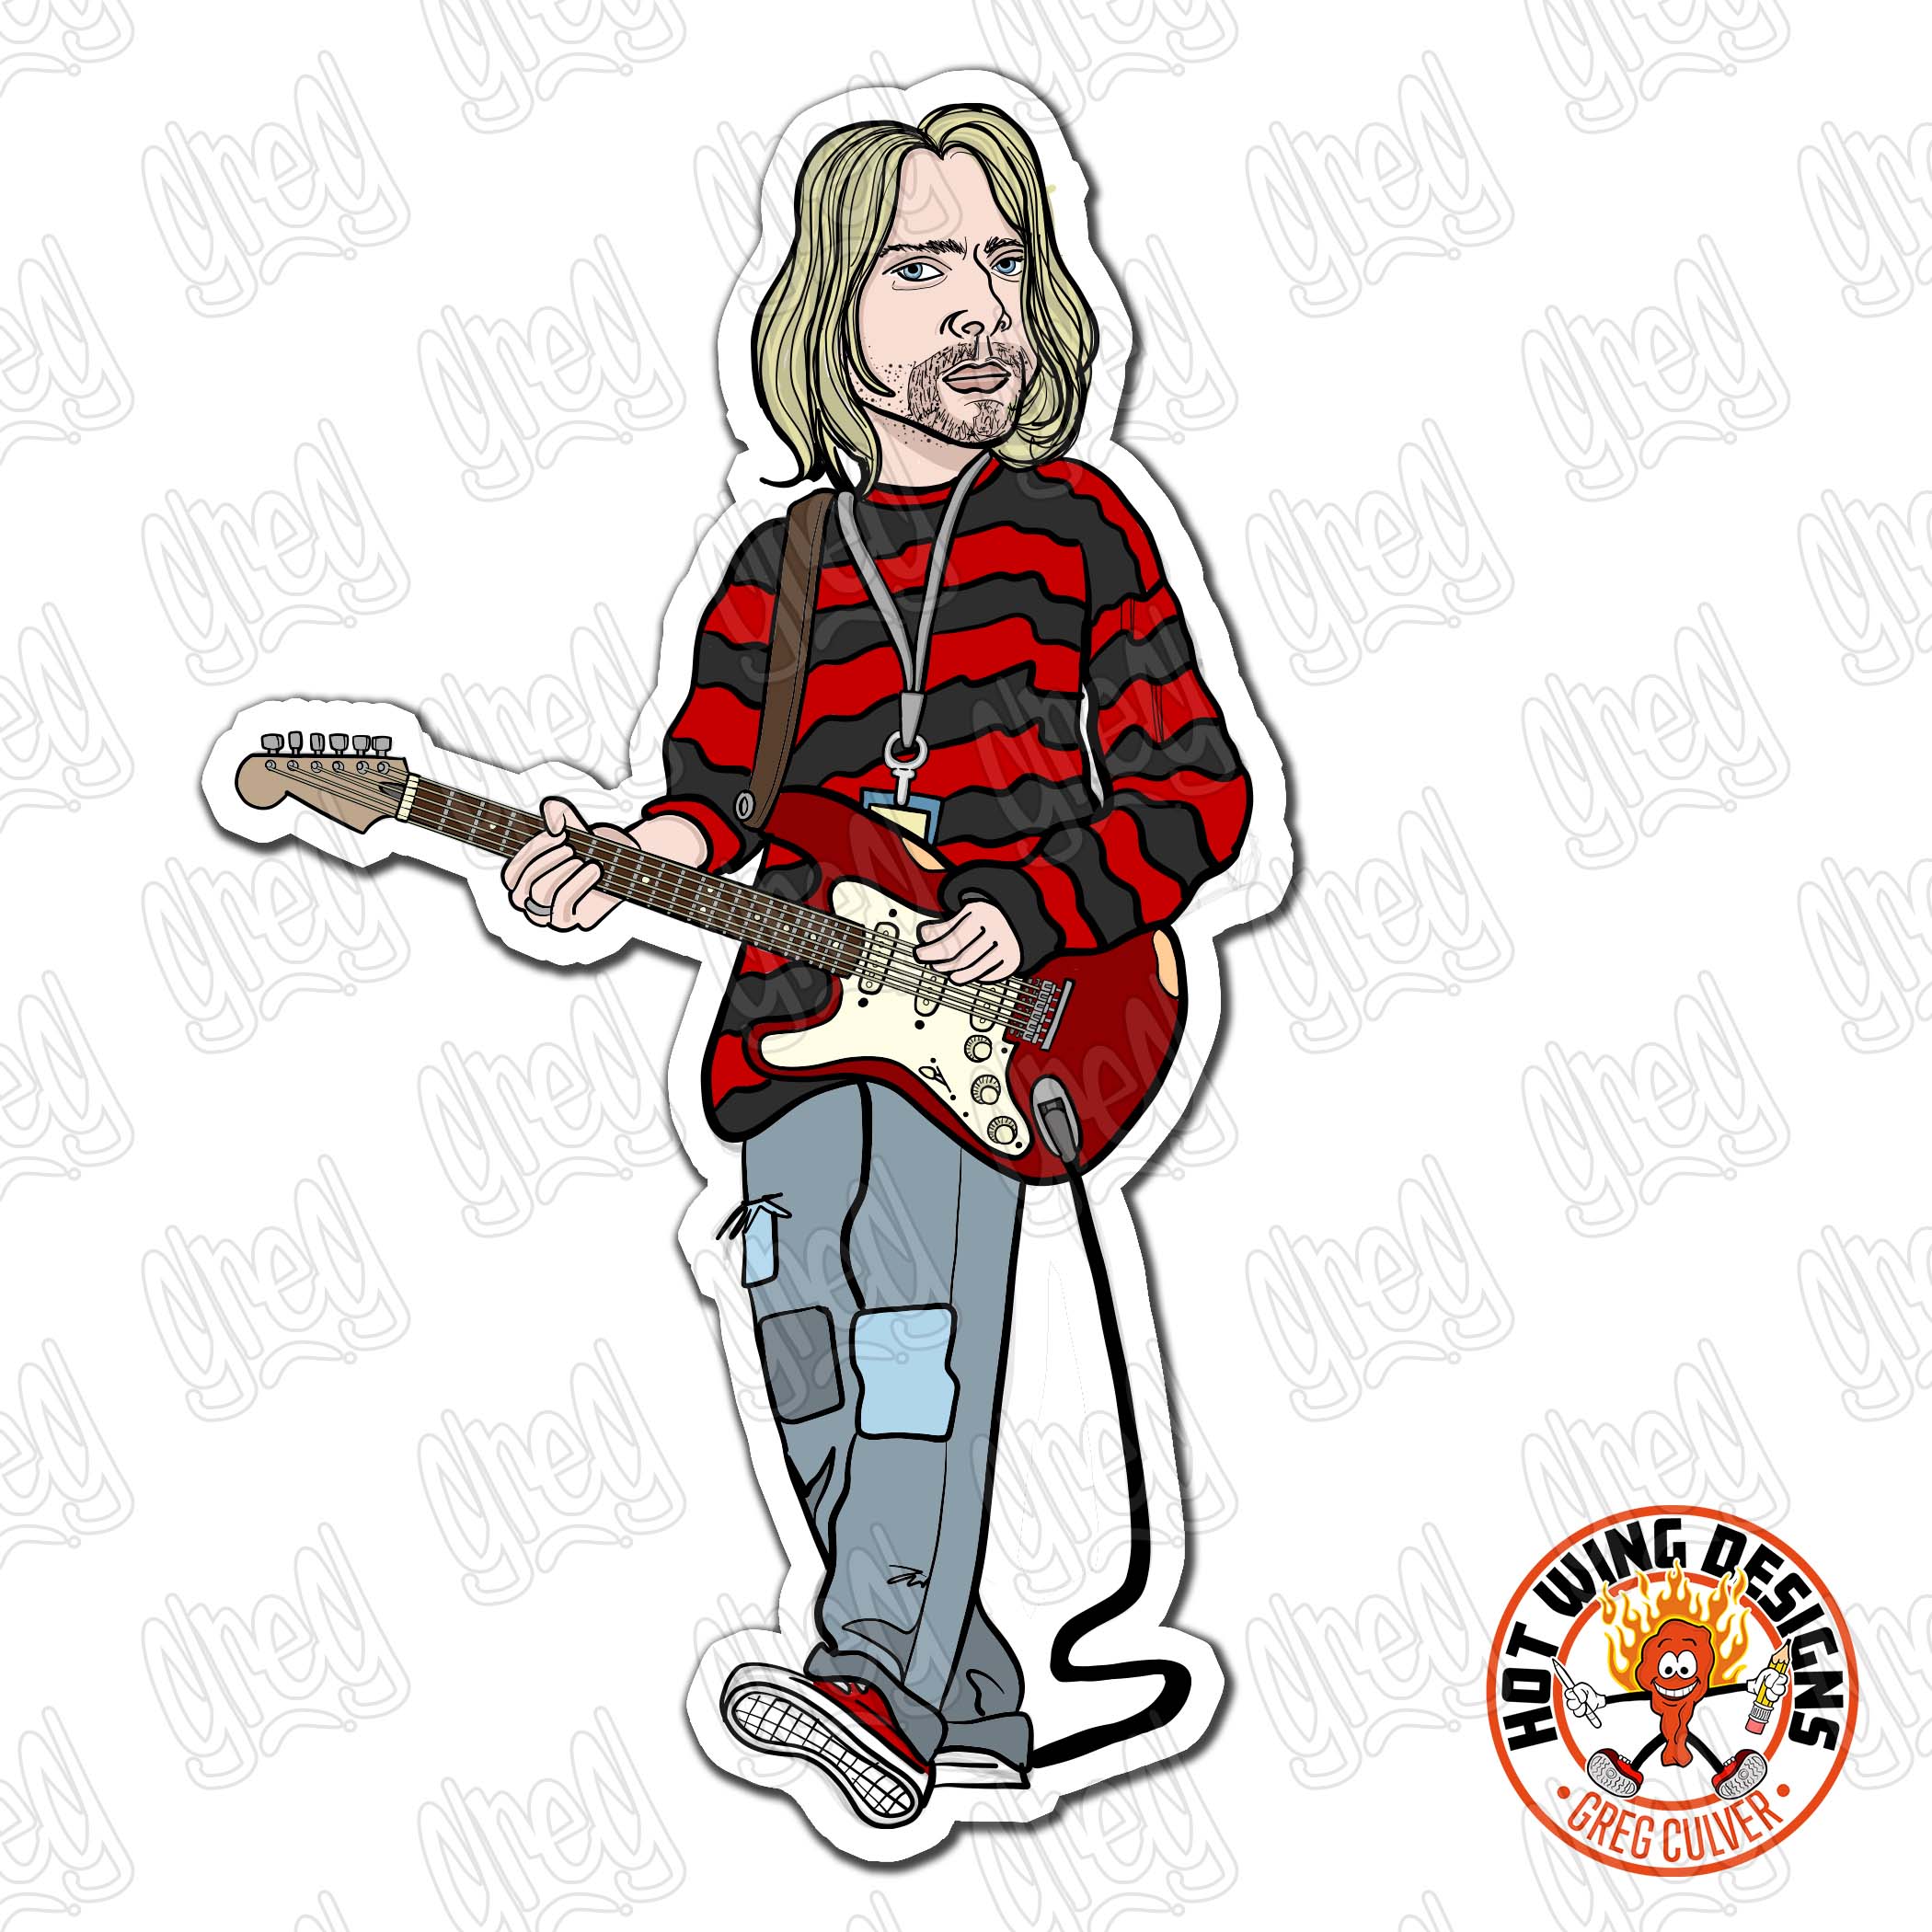 Kurt Cobain cartoon sticker by Hot Wing Designs